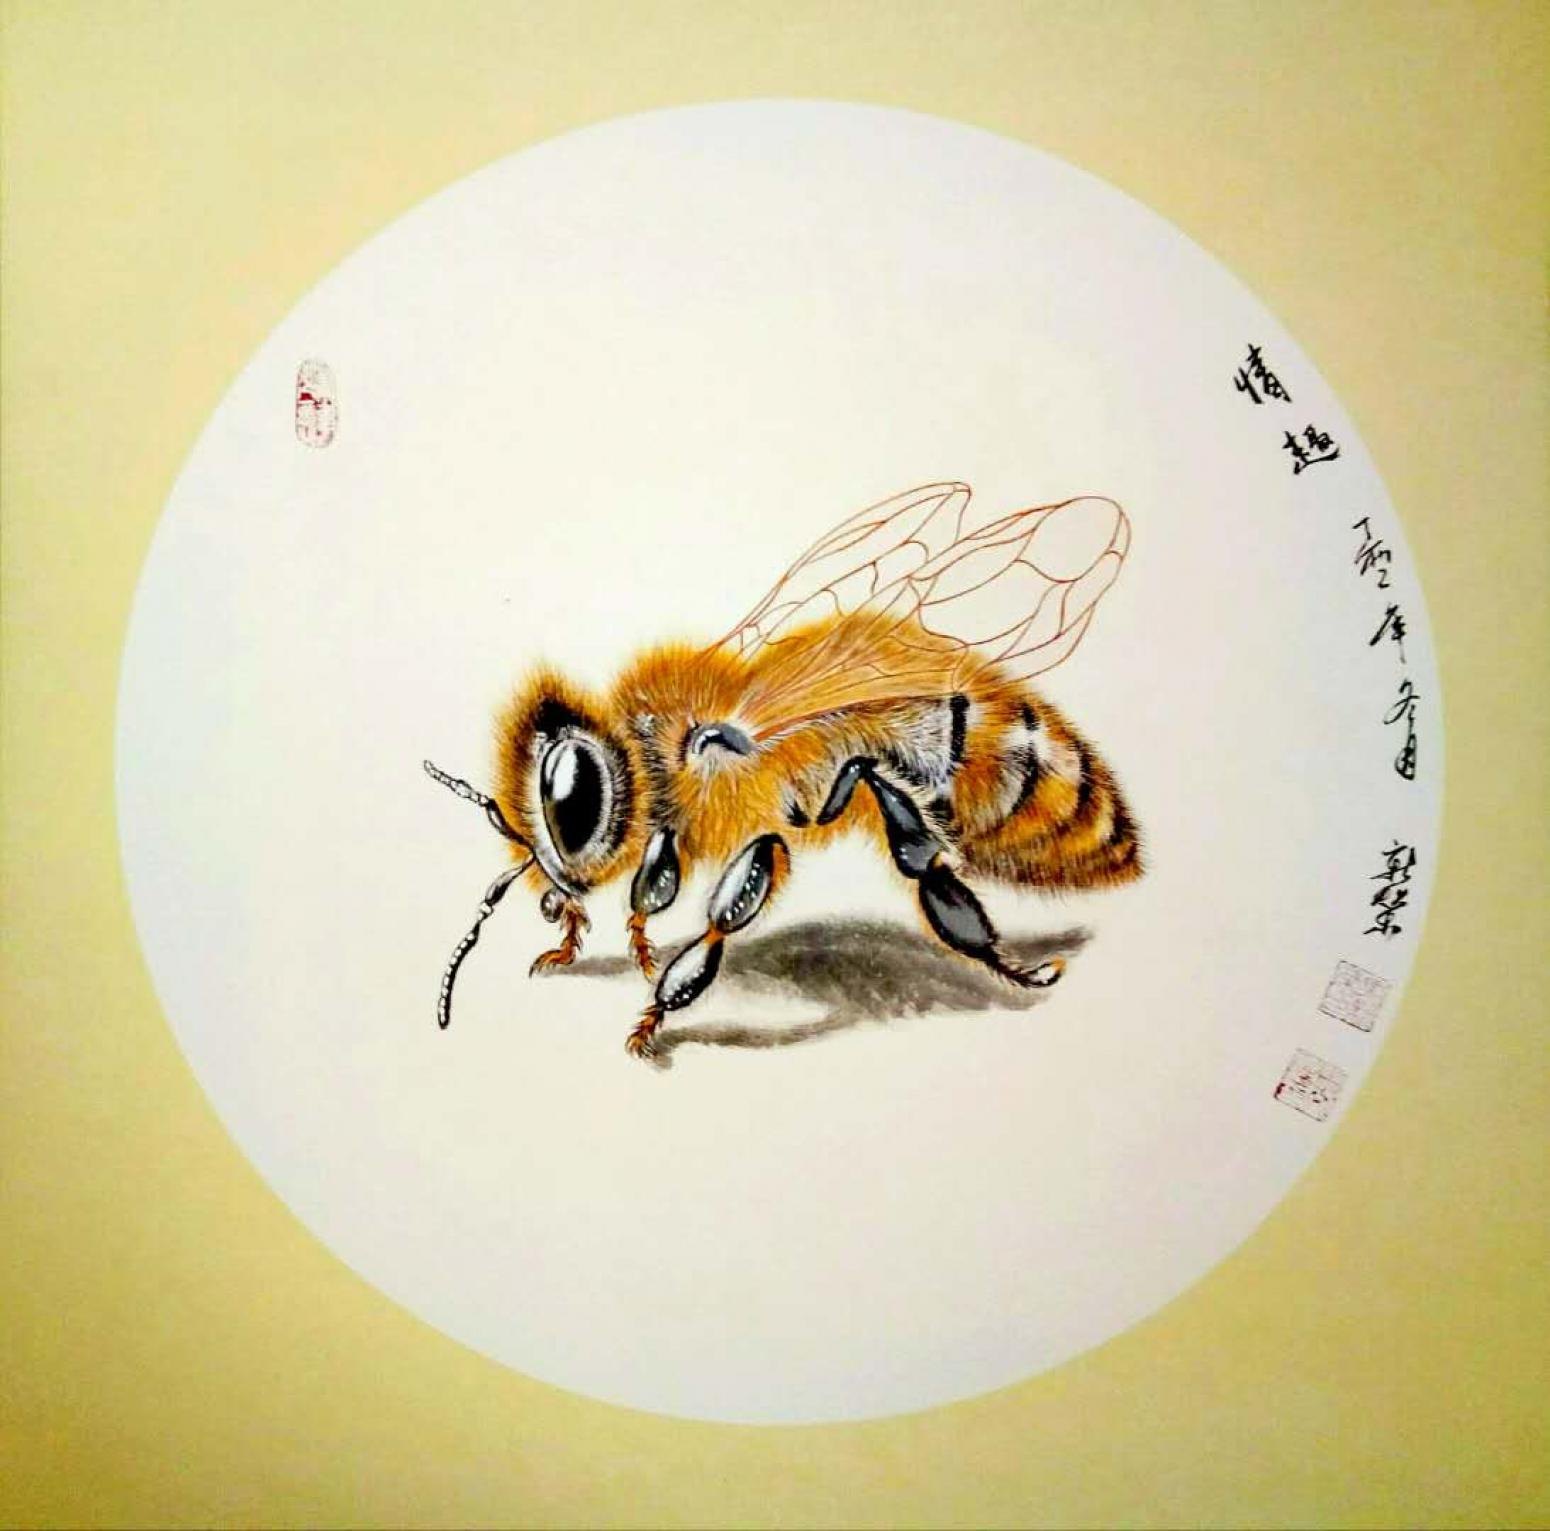 马新荣国画作品《蜜蜂》